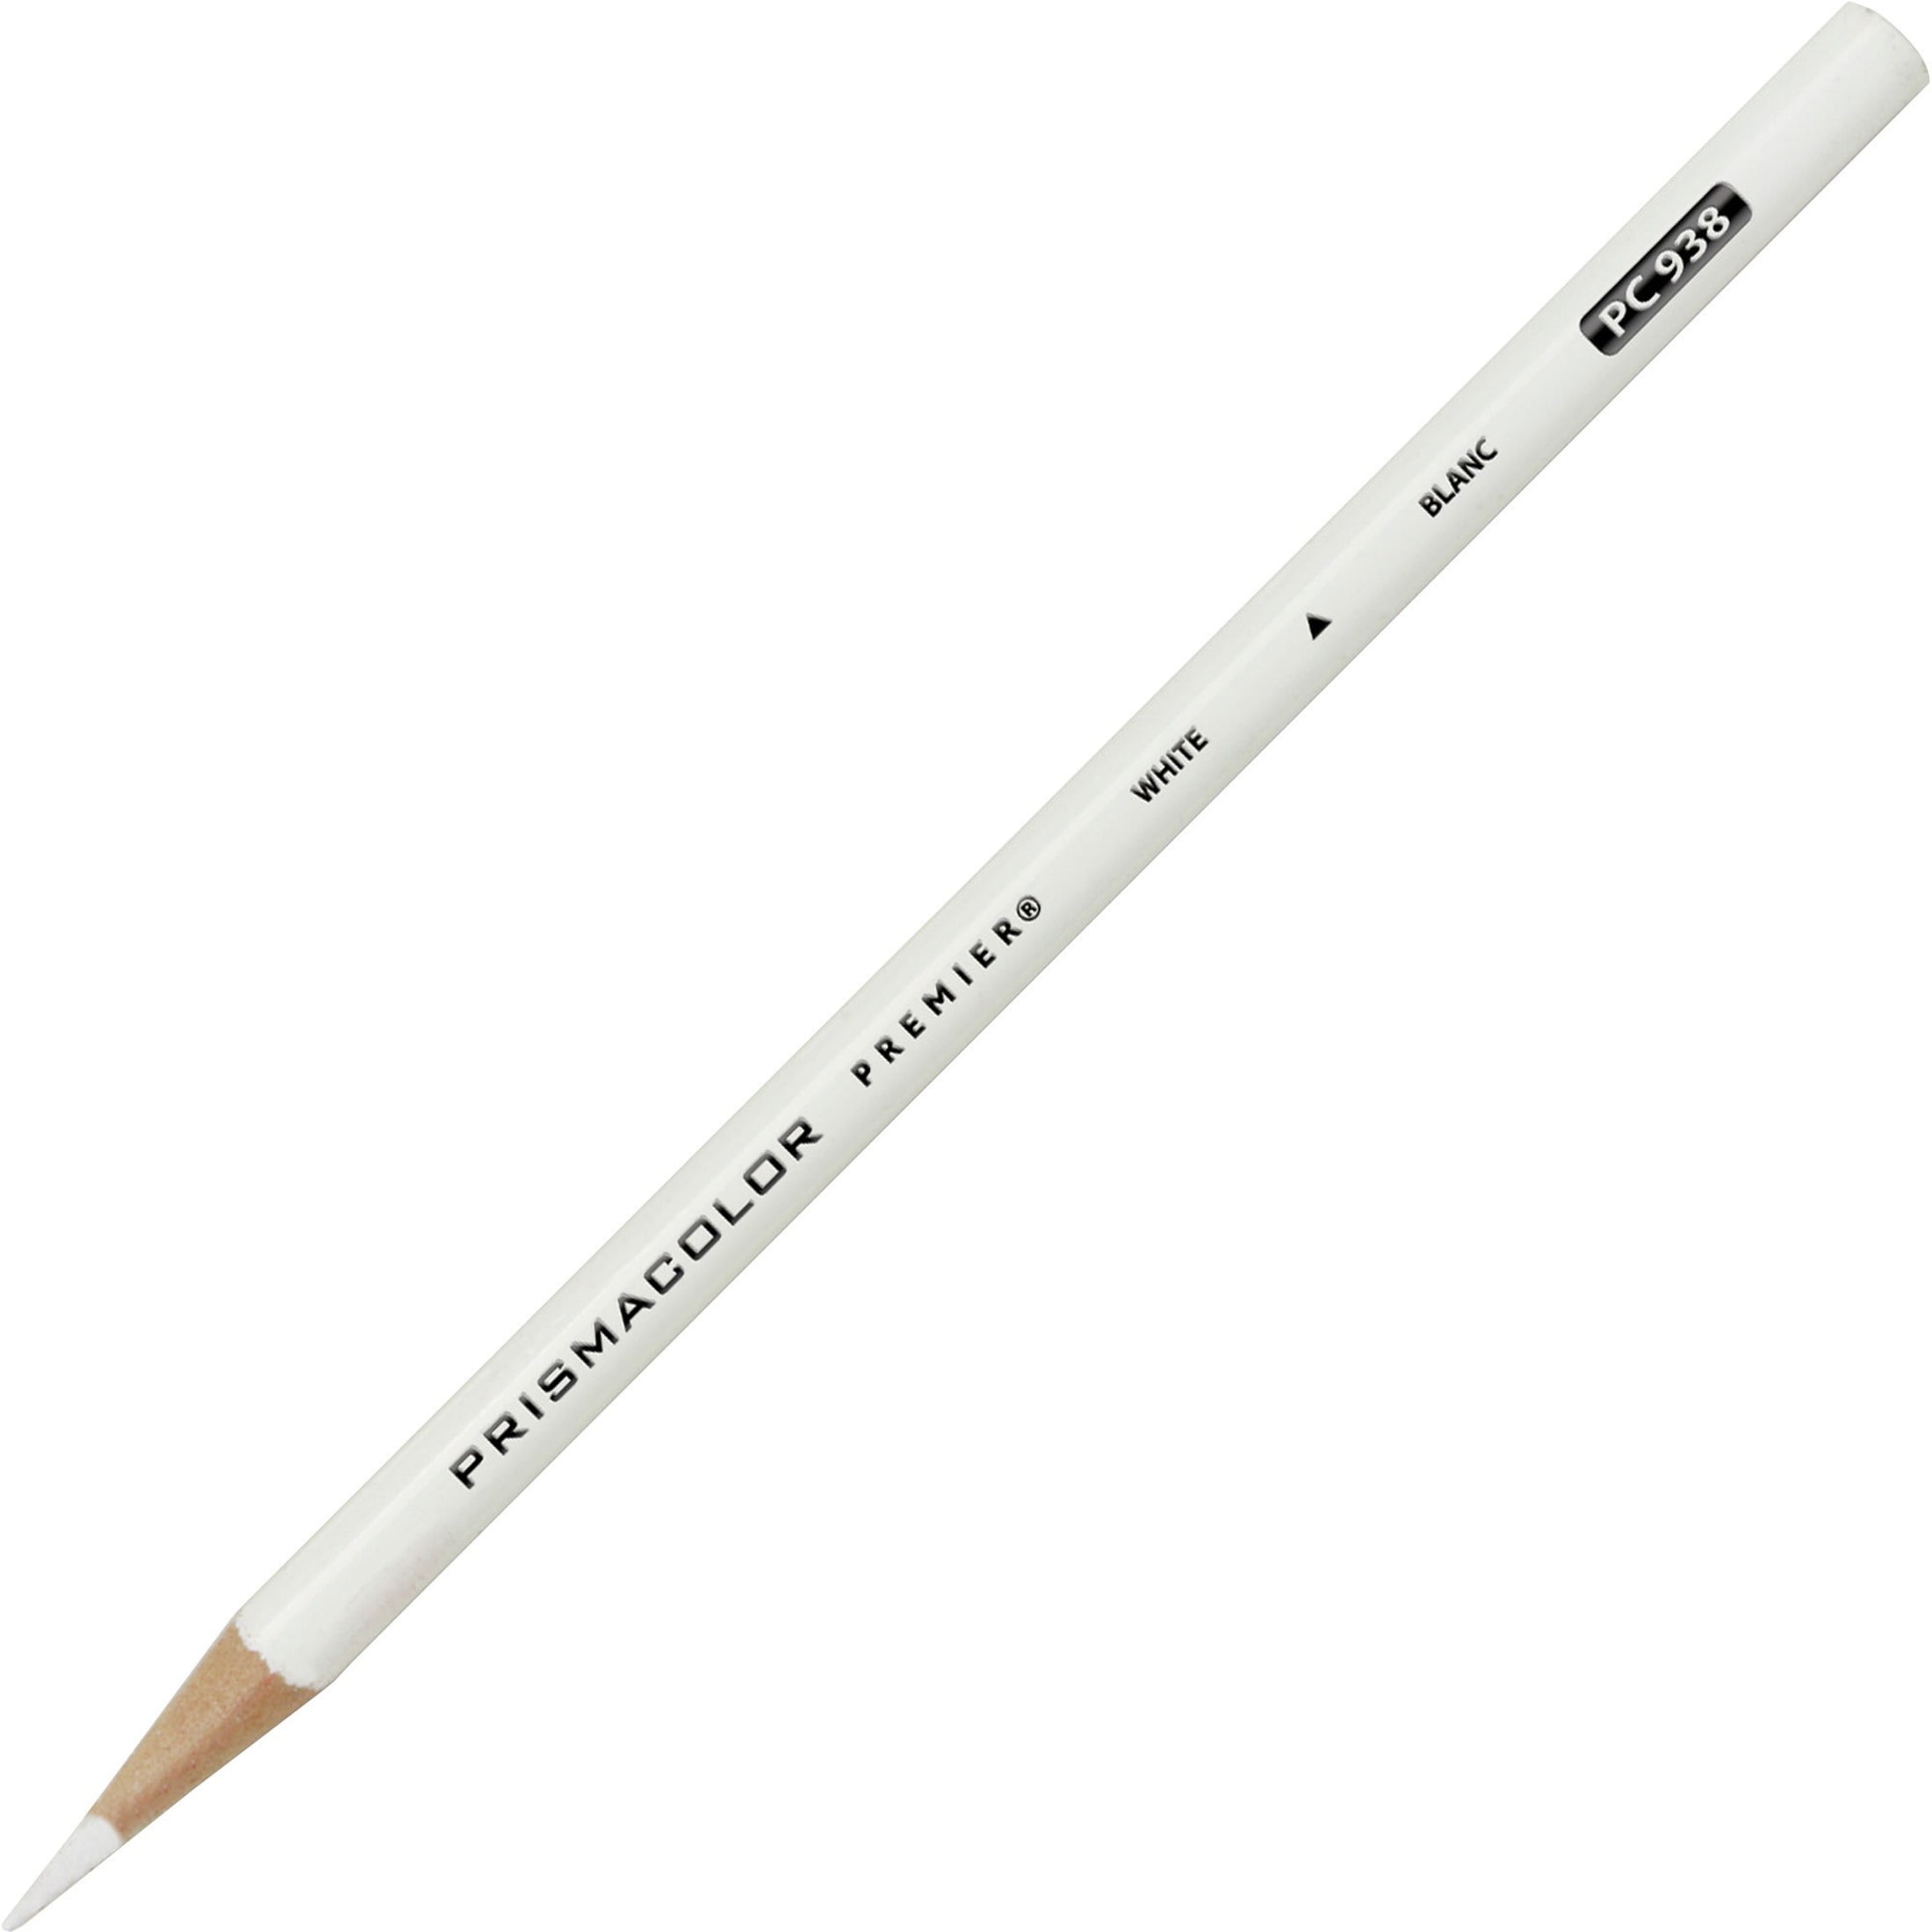 Sold as 1 Dozen Premier Colored Pencil Dozen White Lead/Barrel 